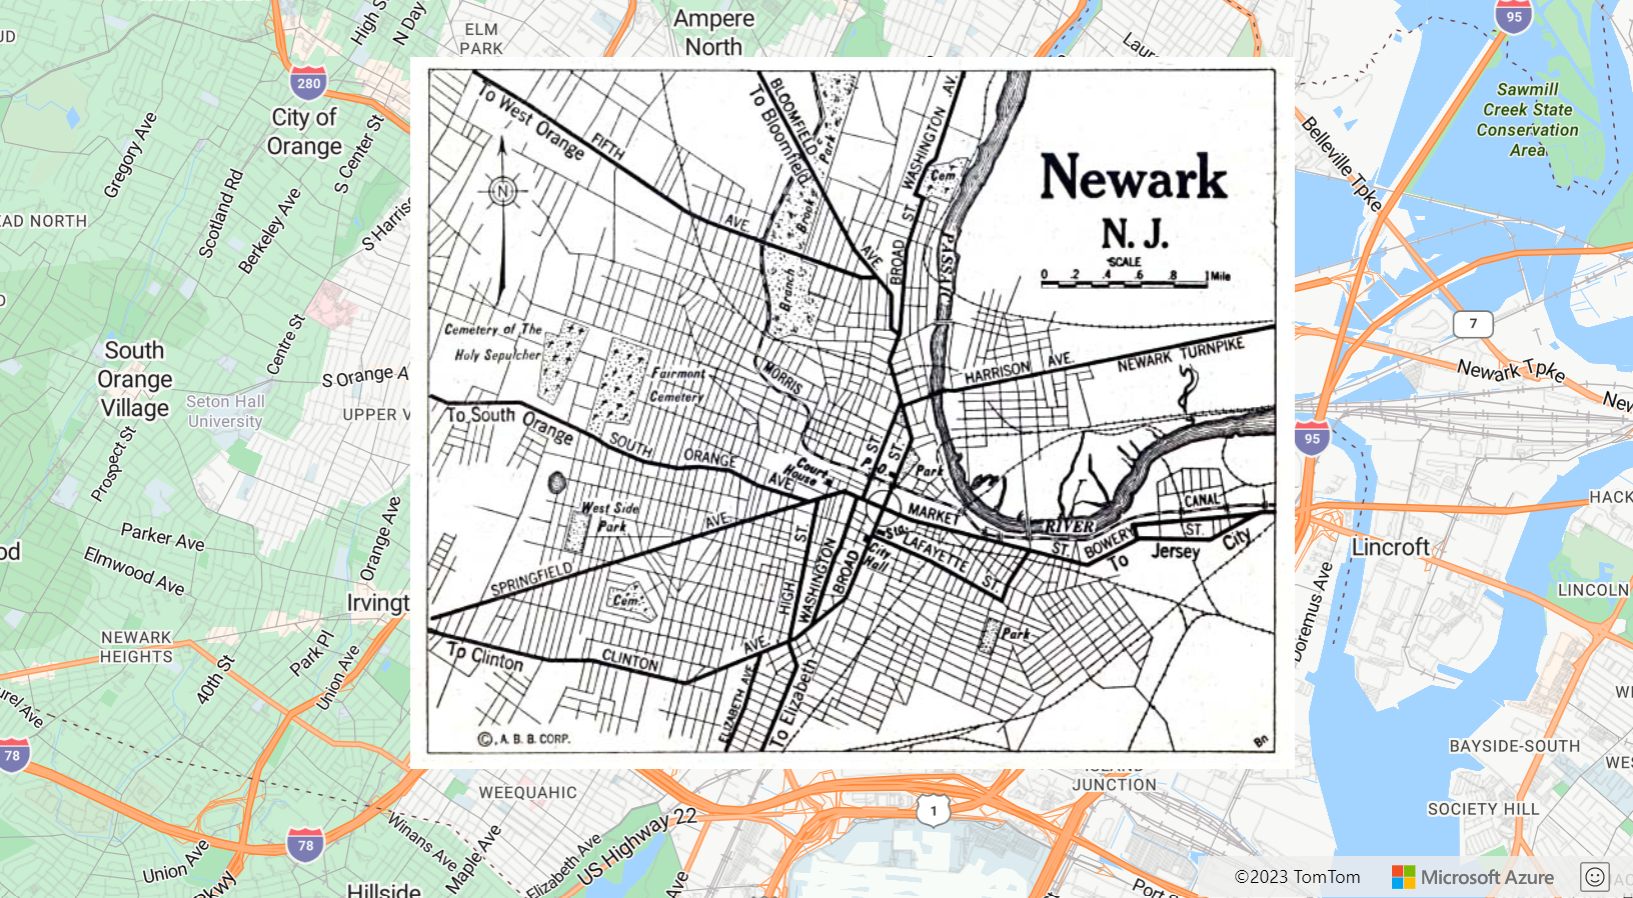 Zrzut ekranu przedstawiający mapę z obrazem mapy Newark New Jersey z 1922 roku jako warstwą obrazu.